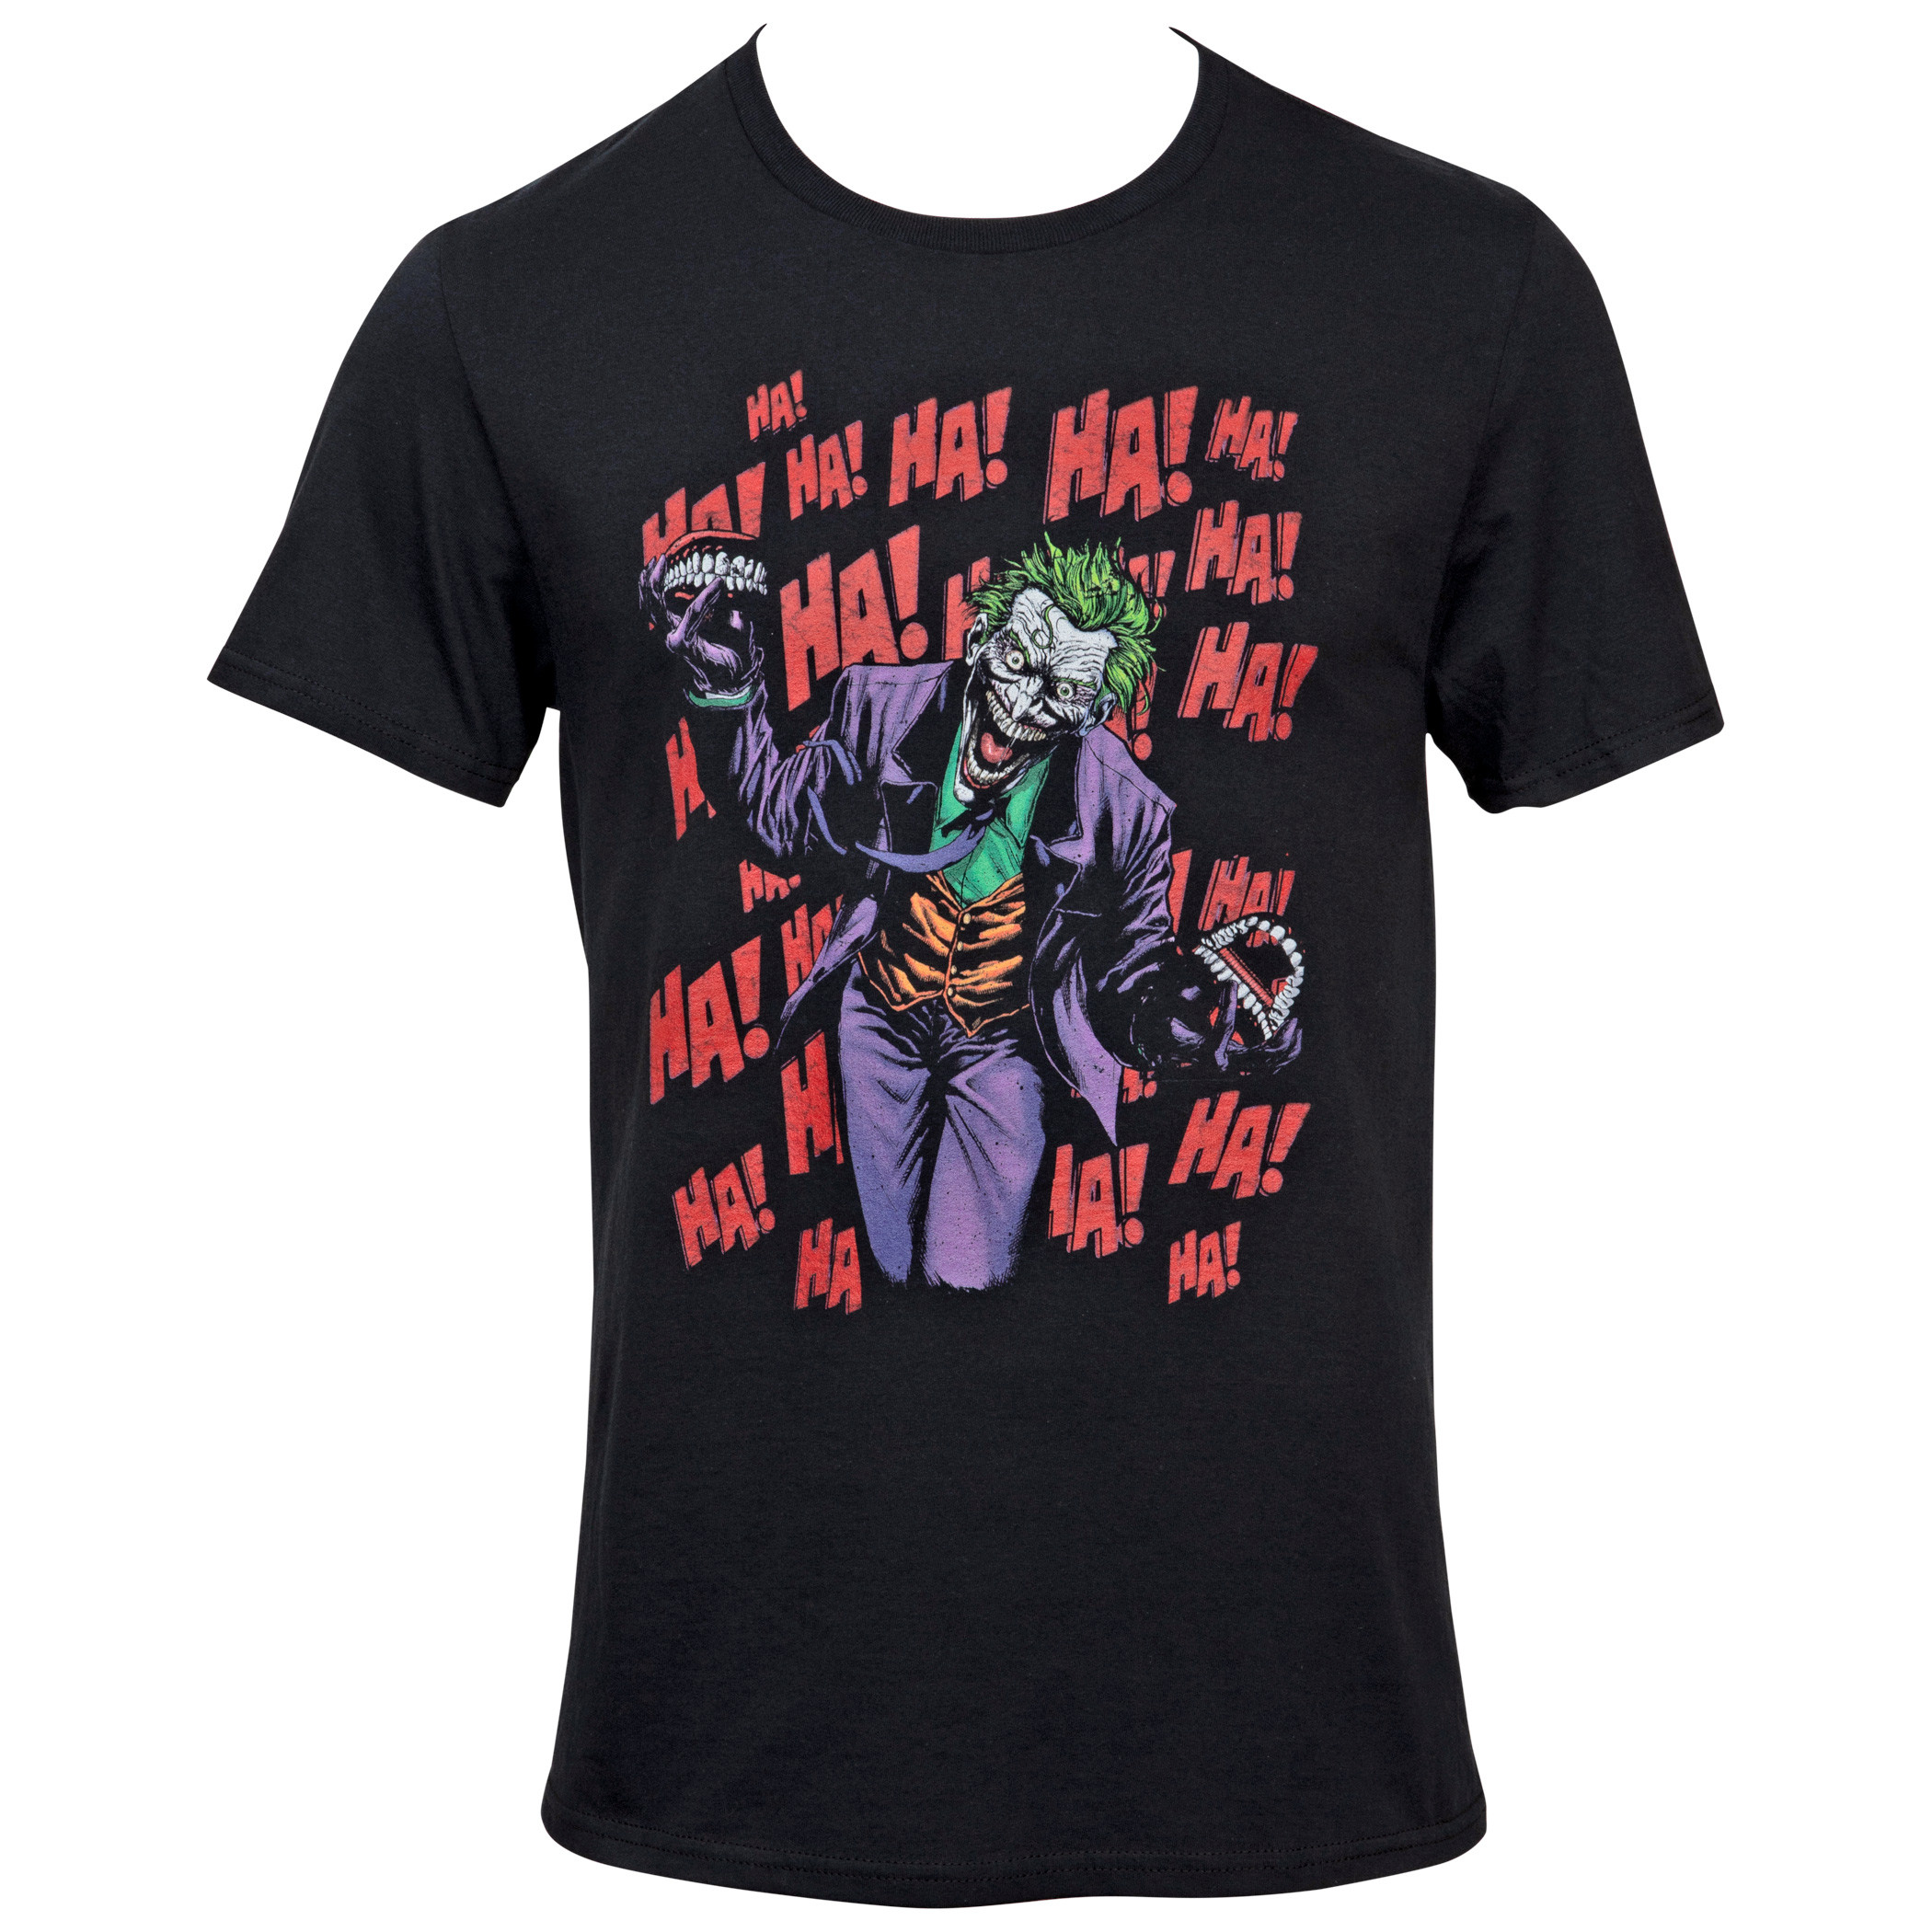 DC Comics Batman Joker Character with HA! HA! HA! All Over T-Shirt